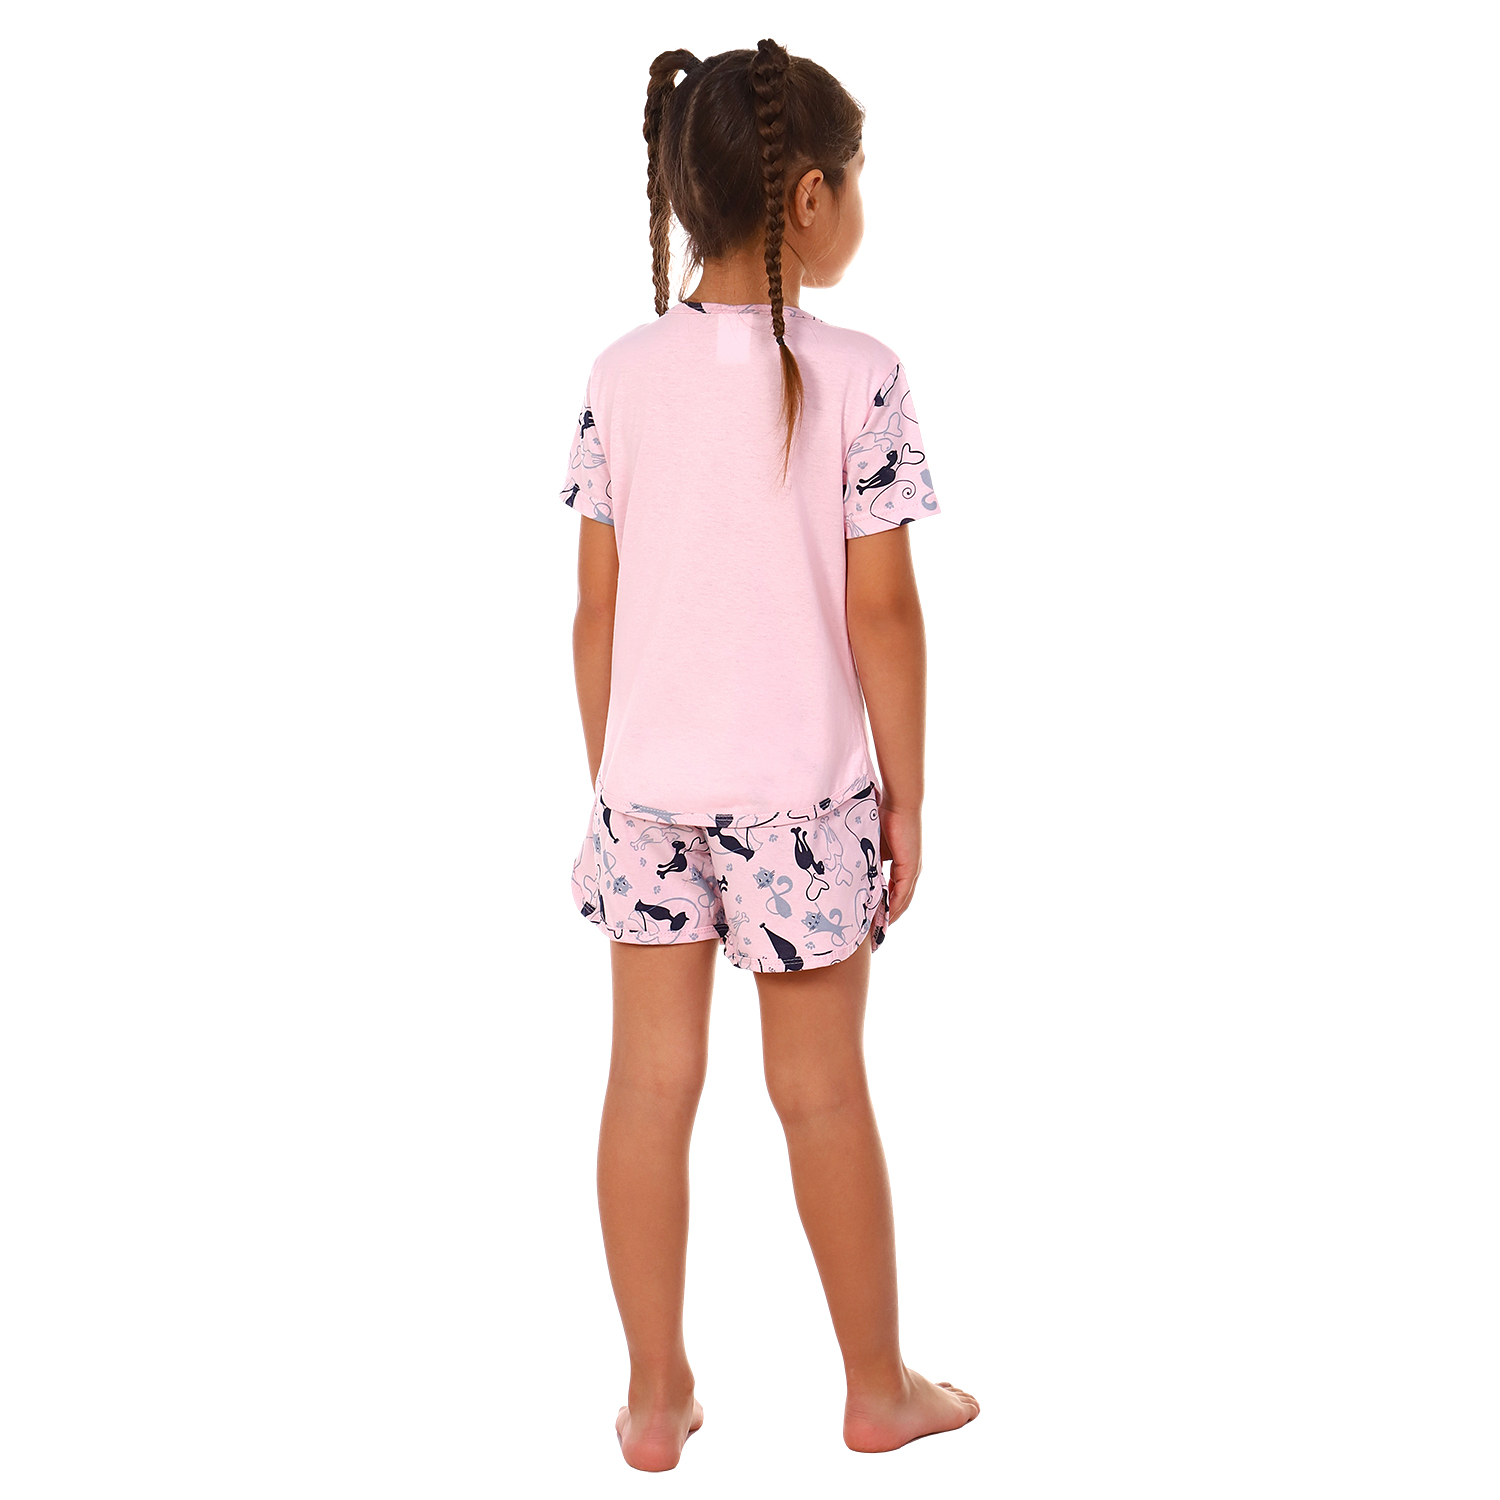 Пижама Детская Одежда 004К8/розовый4 - фото 4